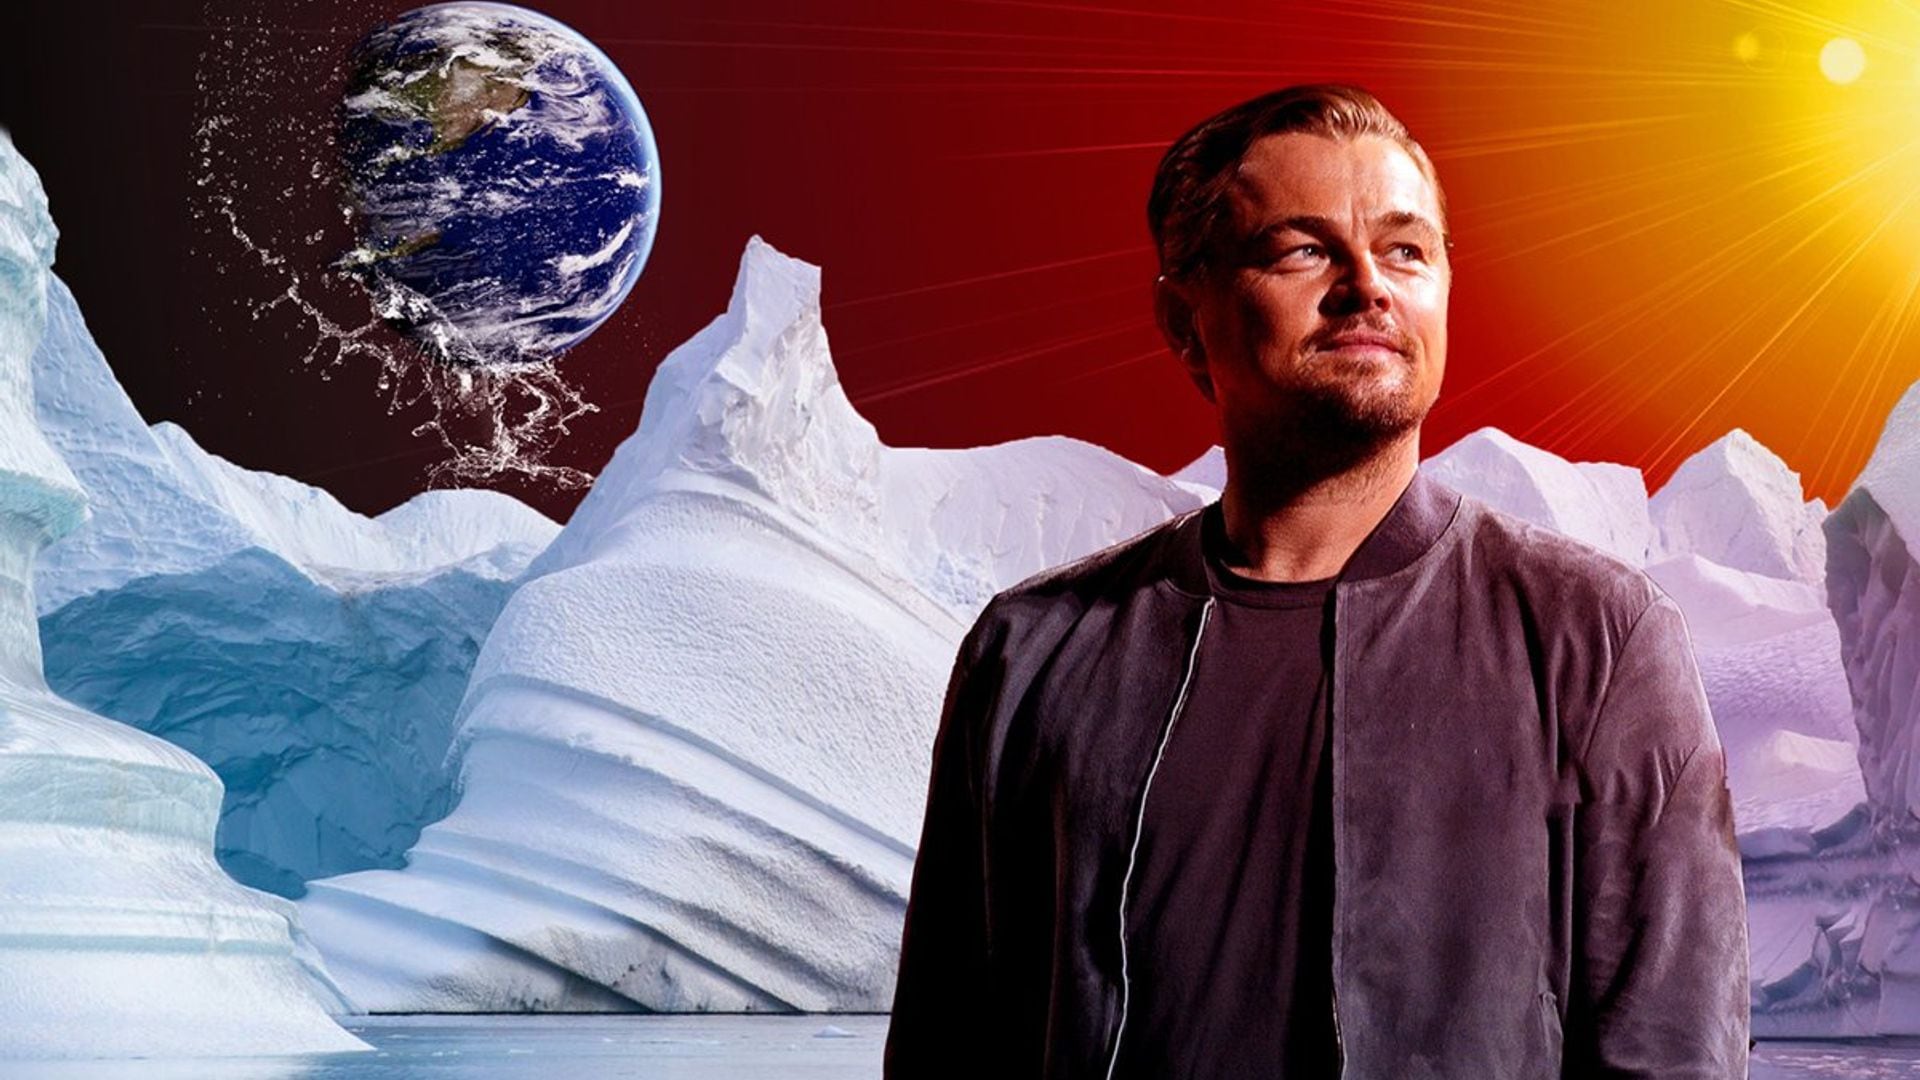 ¿Cómo vive y gasta su fortuna Leonardo DiCaprio? Las claves de la lucha ‘eco’ de una estrella de Hollywood